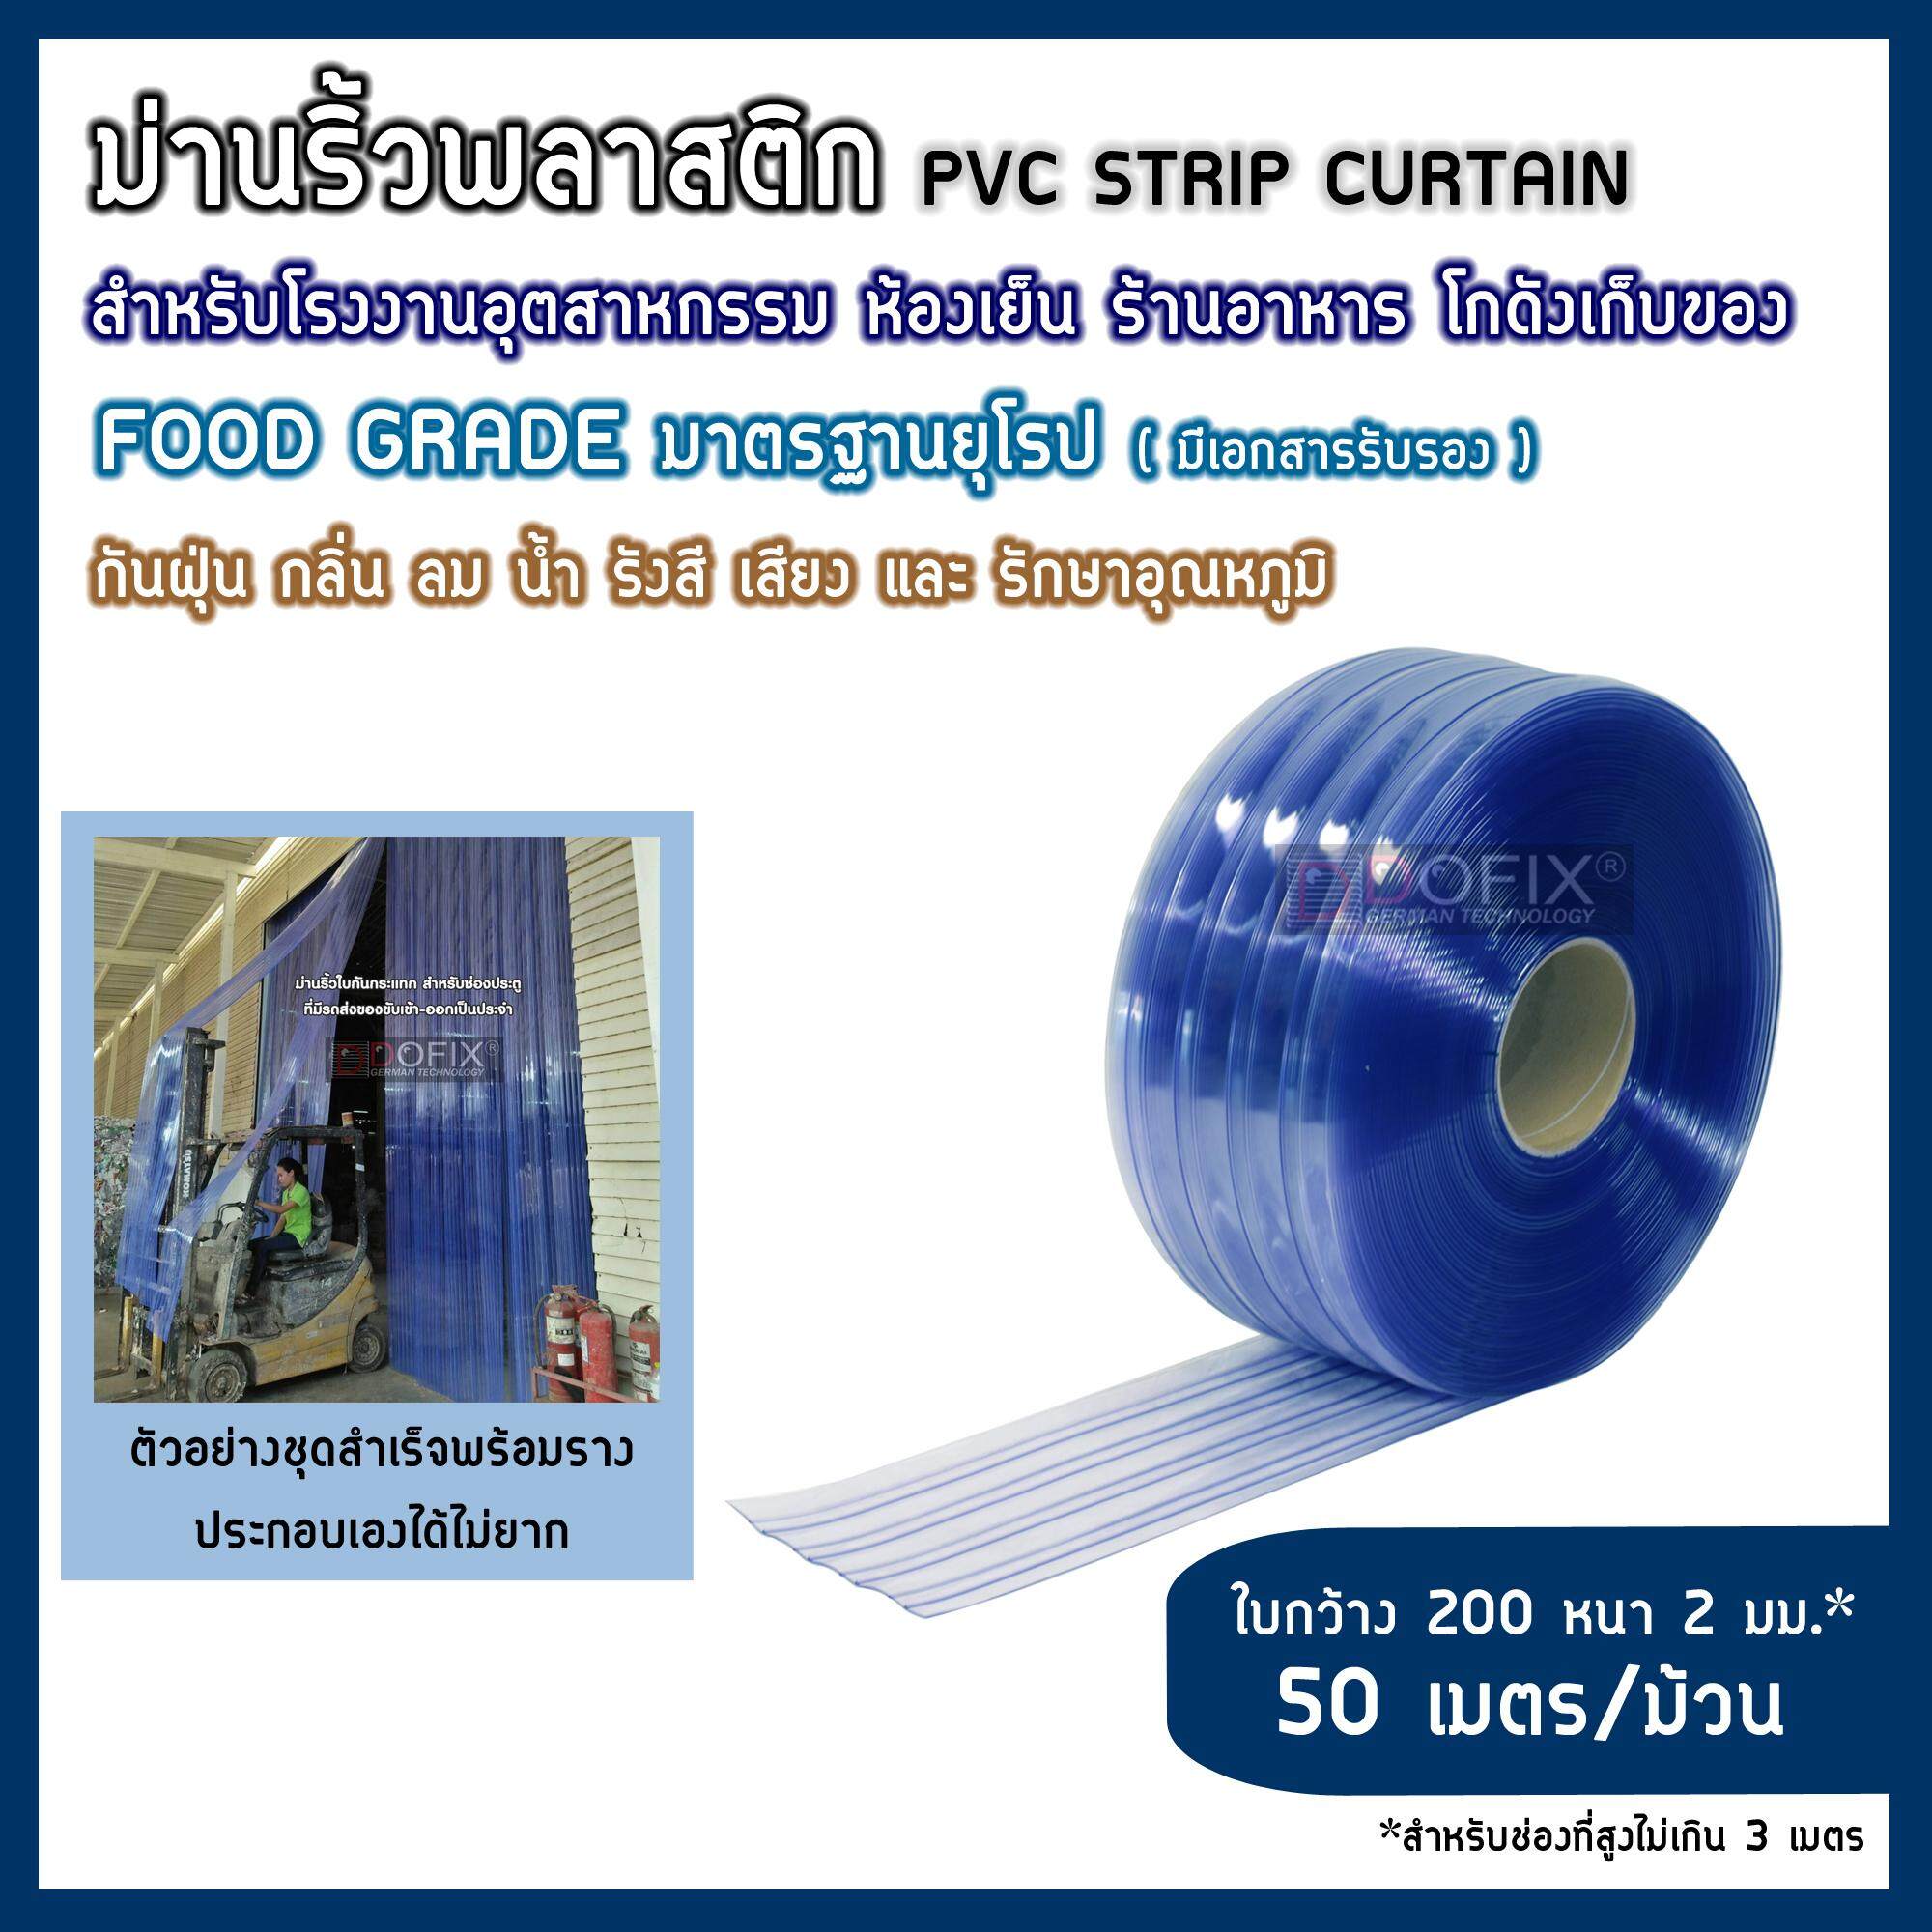 (ชนิดใสธรรมดา-ใบกันกระแทก ใบกว้าง200หนา2มม.) ม่านพลาสติก ม่านริ้ว ม่านกันฝุ่น ม่านกันแอร์ ม่านโรงงานโกดัง ม่านห้องเย็น ม่านกันนก PVC Strip Curtain ปลอดสารปนเปื้อน food grade มาตรฐานยุโรป รับรองโดย TUV Rheinland ส่งฟรีทั่วประเทศ แบรนด์ DOFIX (50เมตร/ม้วน)